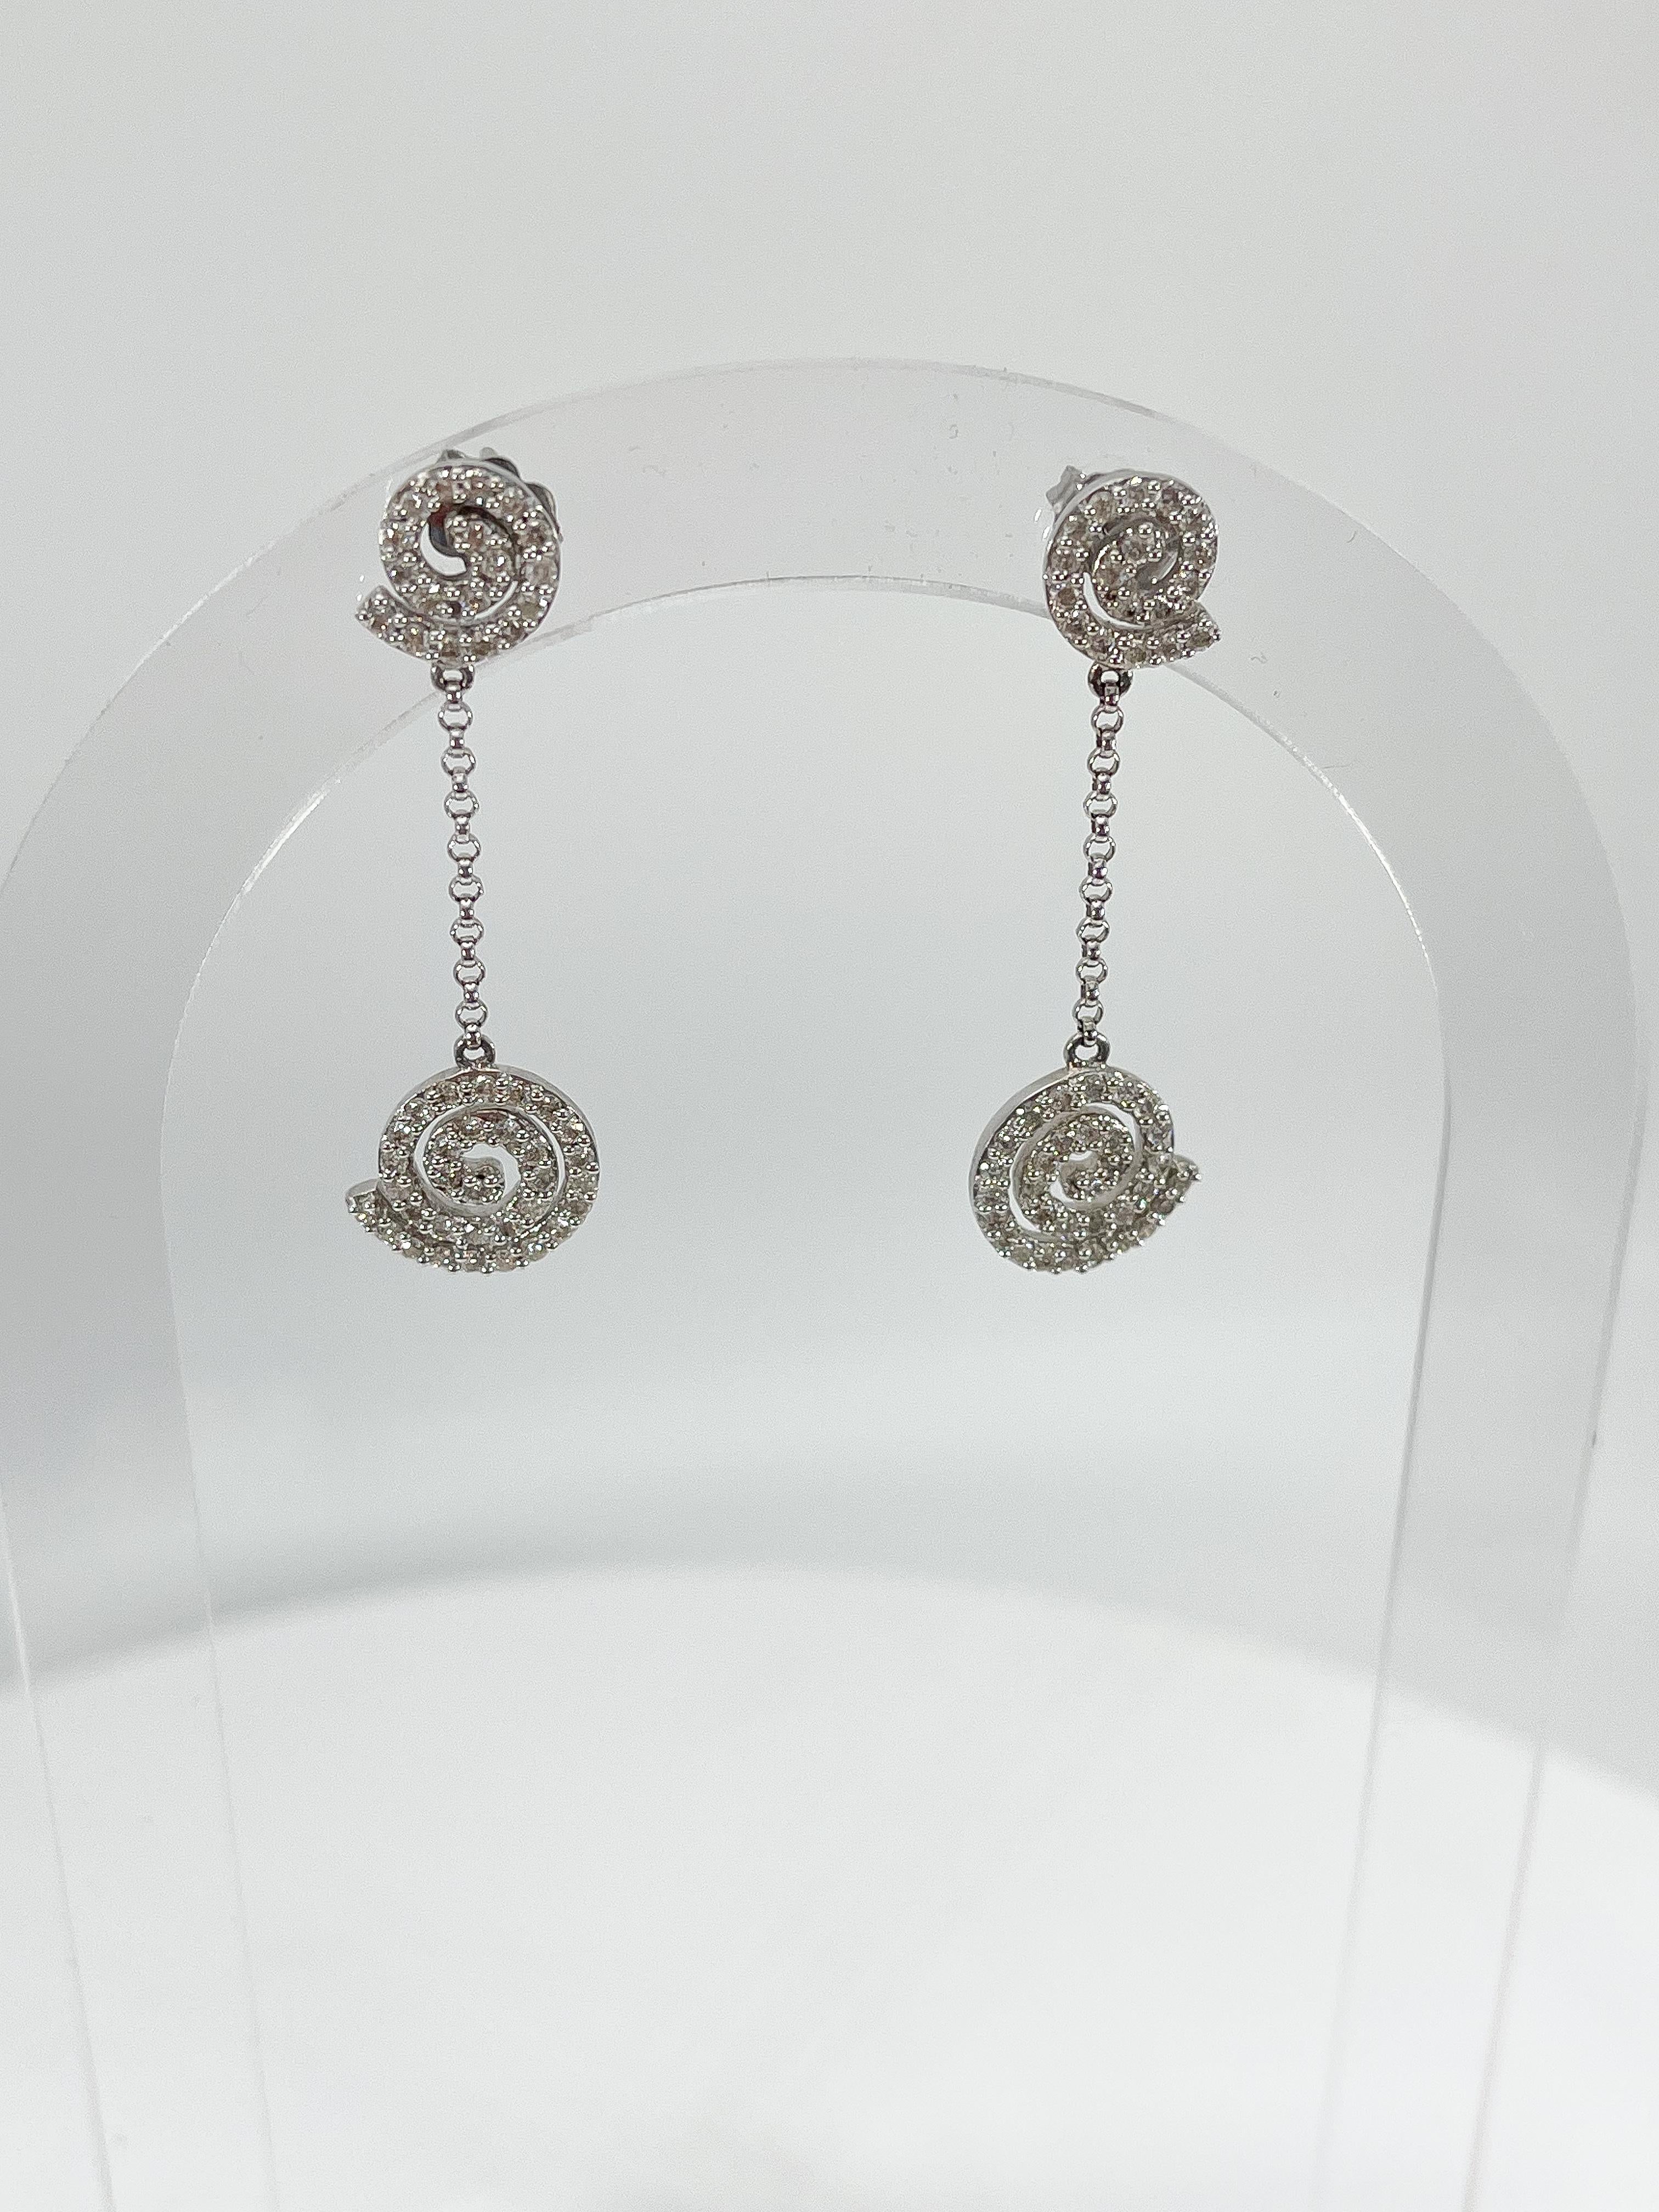 Boucles d'oreilles pendantes en or blanc 14k avec tourbillon de diamants de 1.06 CTW. Les diamants de ces boucles d'oreilles sont ronds, ont une largeur de 11,7, une longueur de 40 mm et un poids total de 4,2 grammes.